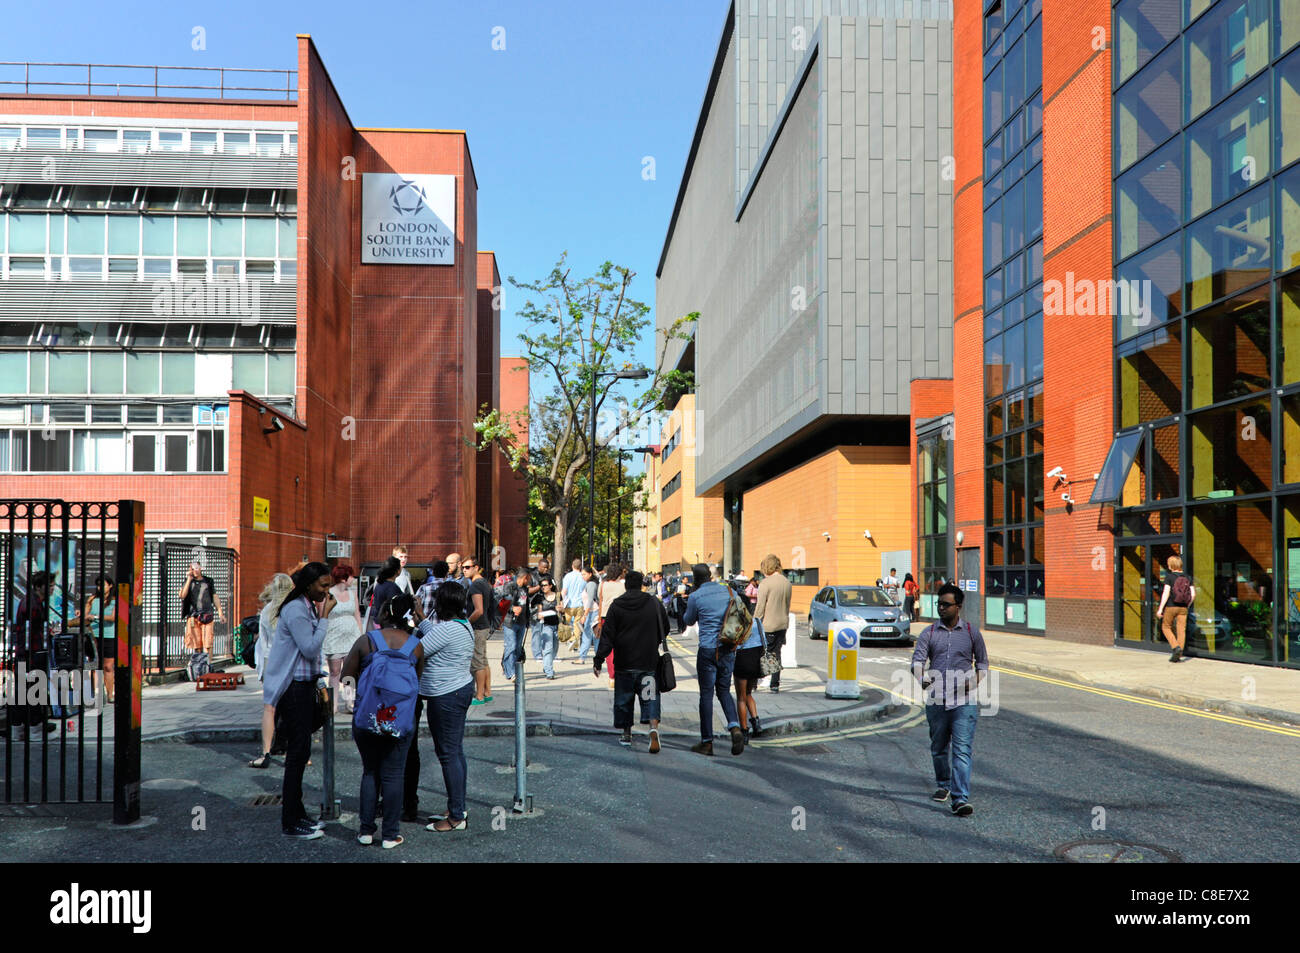 L'université de la banque du Sud de Londres avec des étudiants qui se fraient à l'extérieur à l'heure du déjeuner dans la voie publique divise les bâtiments éducatifs modernes Angleterre Royaume-Uni Banque D'Images